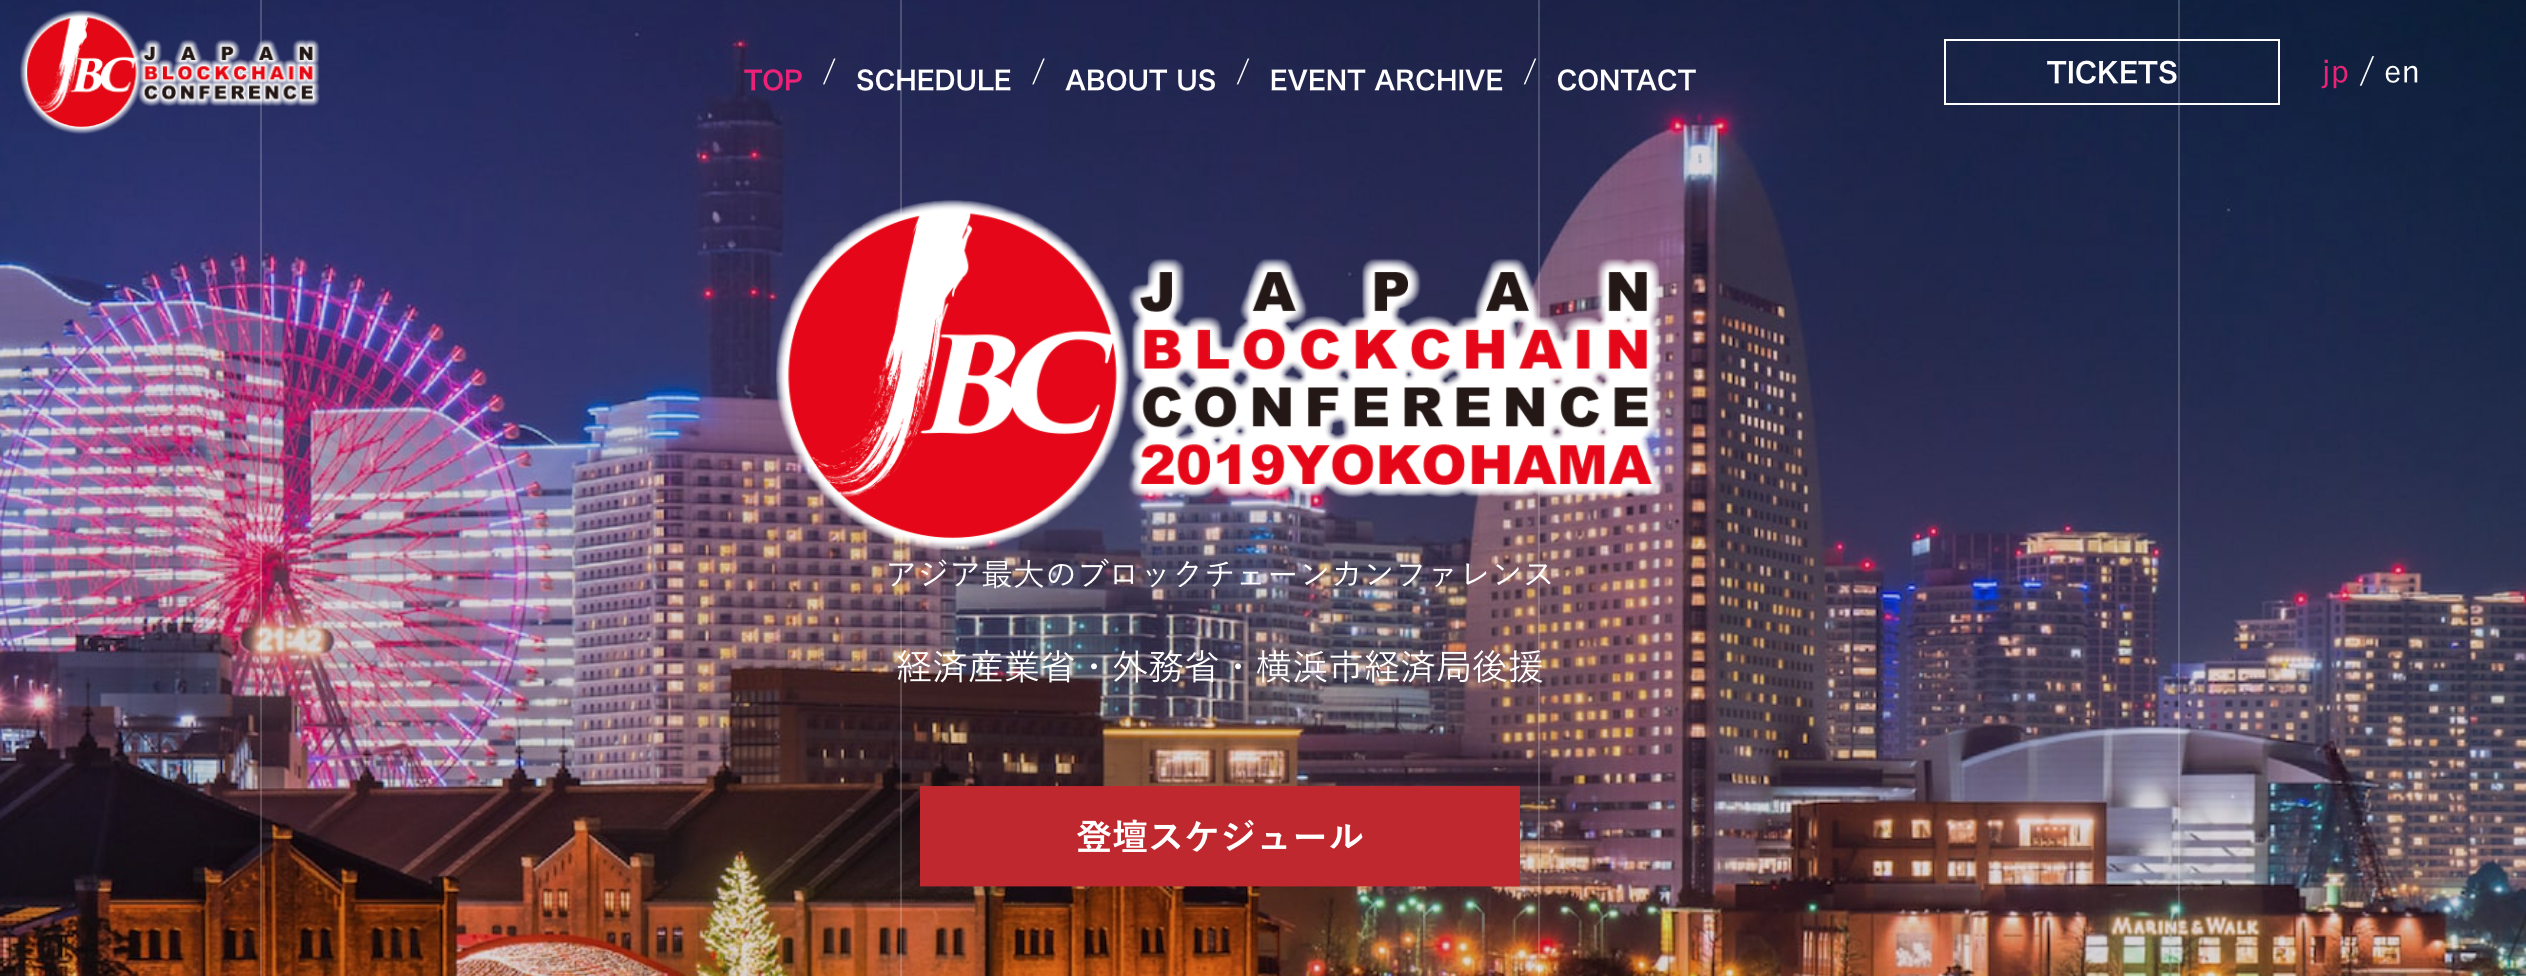 ジャパンブロックチェーンカンファレンス公式サイトの画像